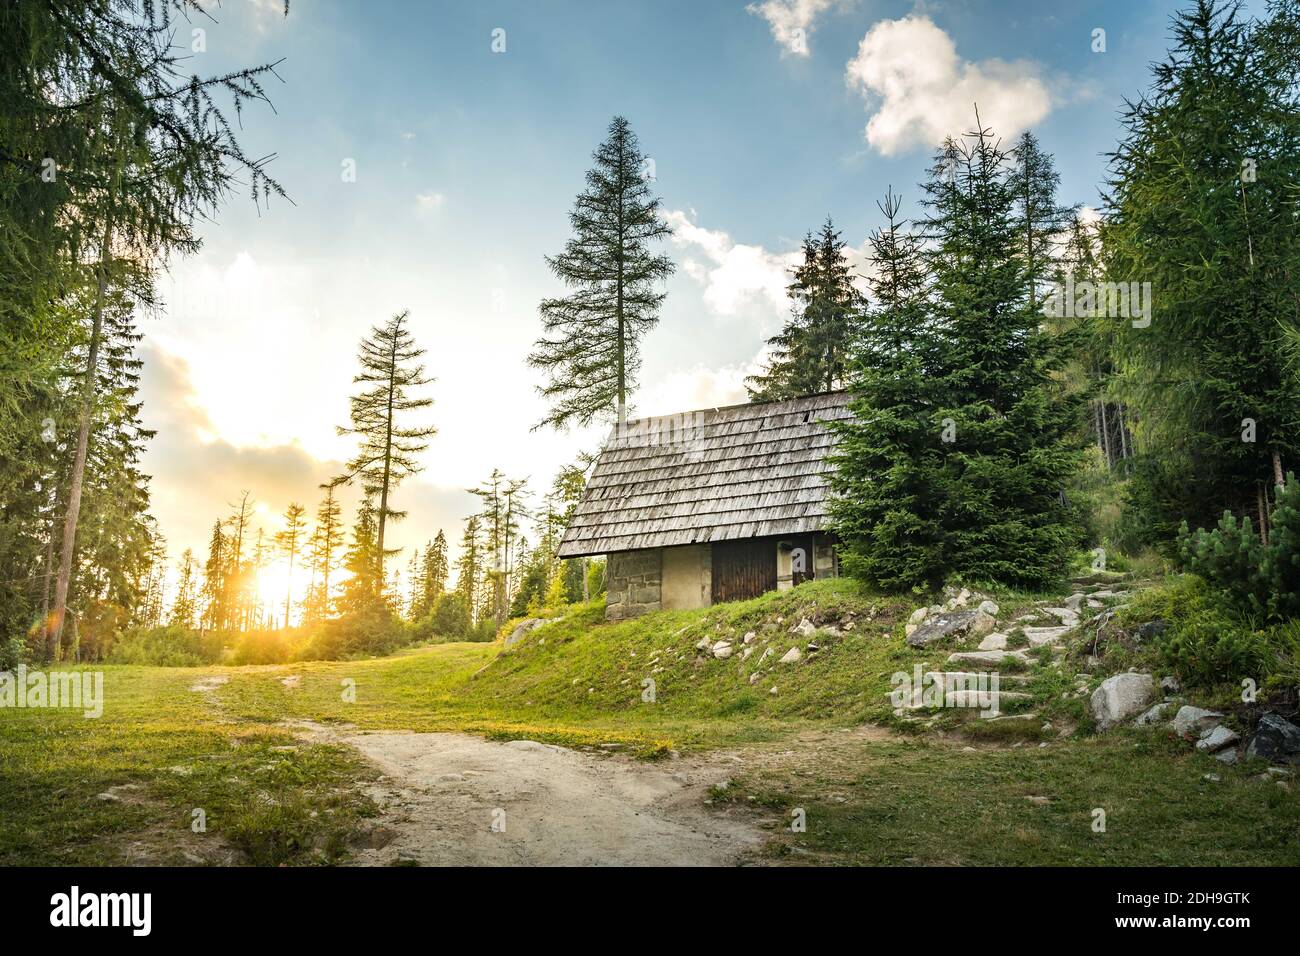 Chalet isolé dans les montagnes entouré de Forrest profond, coucher de soleil en arrière-plan avec des rayons de soleil. Slovaquie montagnes Tatra, Strbske Pleso. Banque D'Images